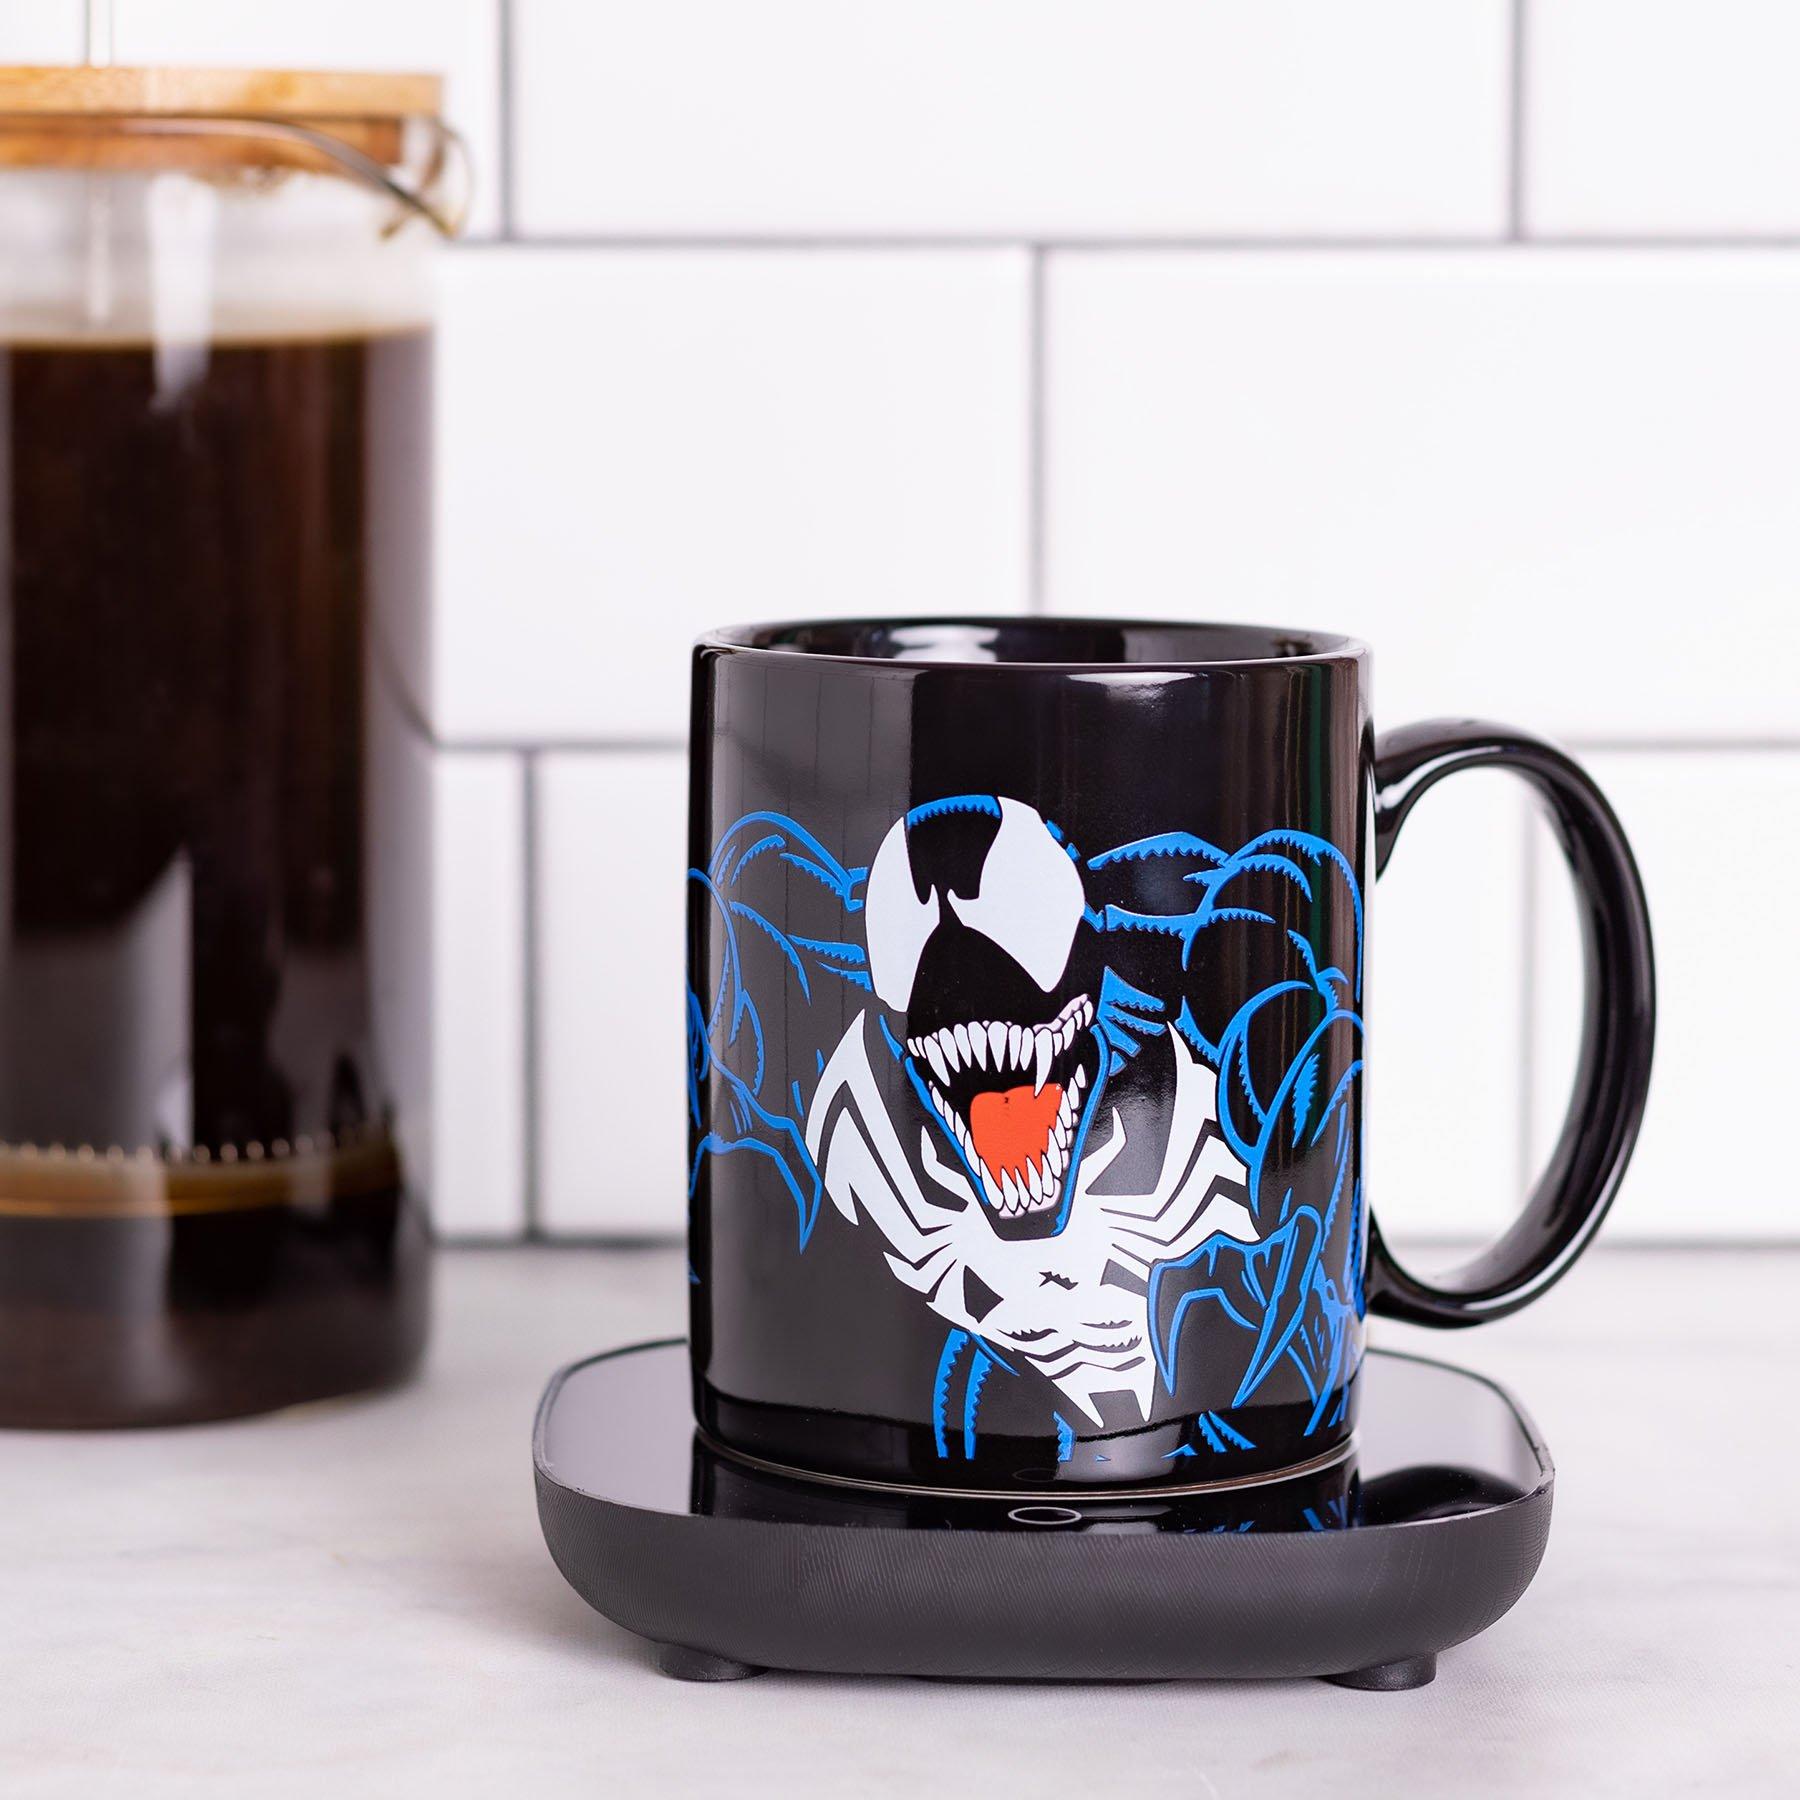 Marvel's Venom Mug Warmer with Mug